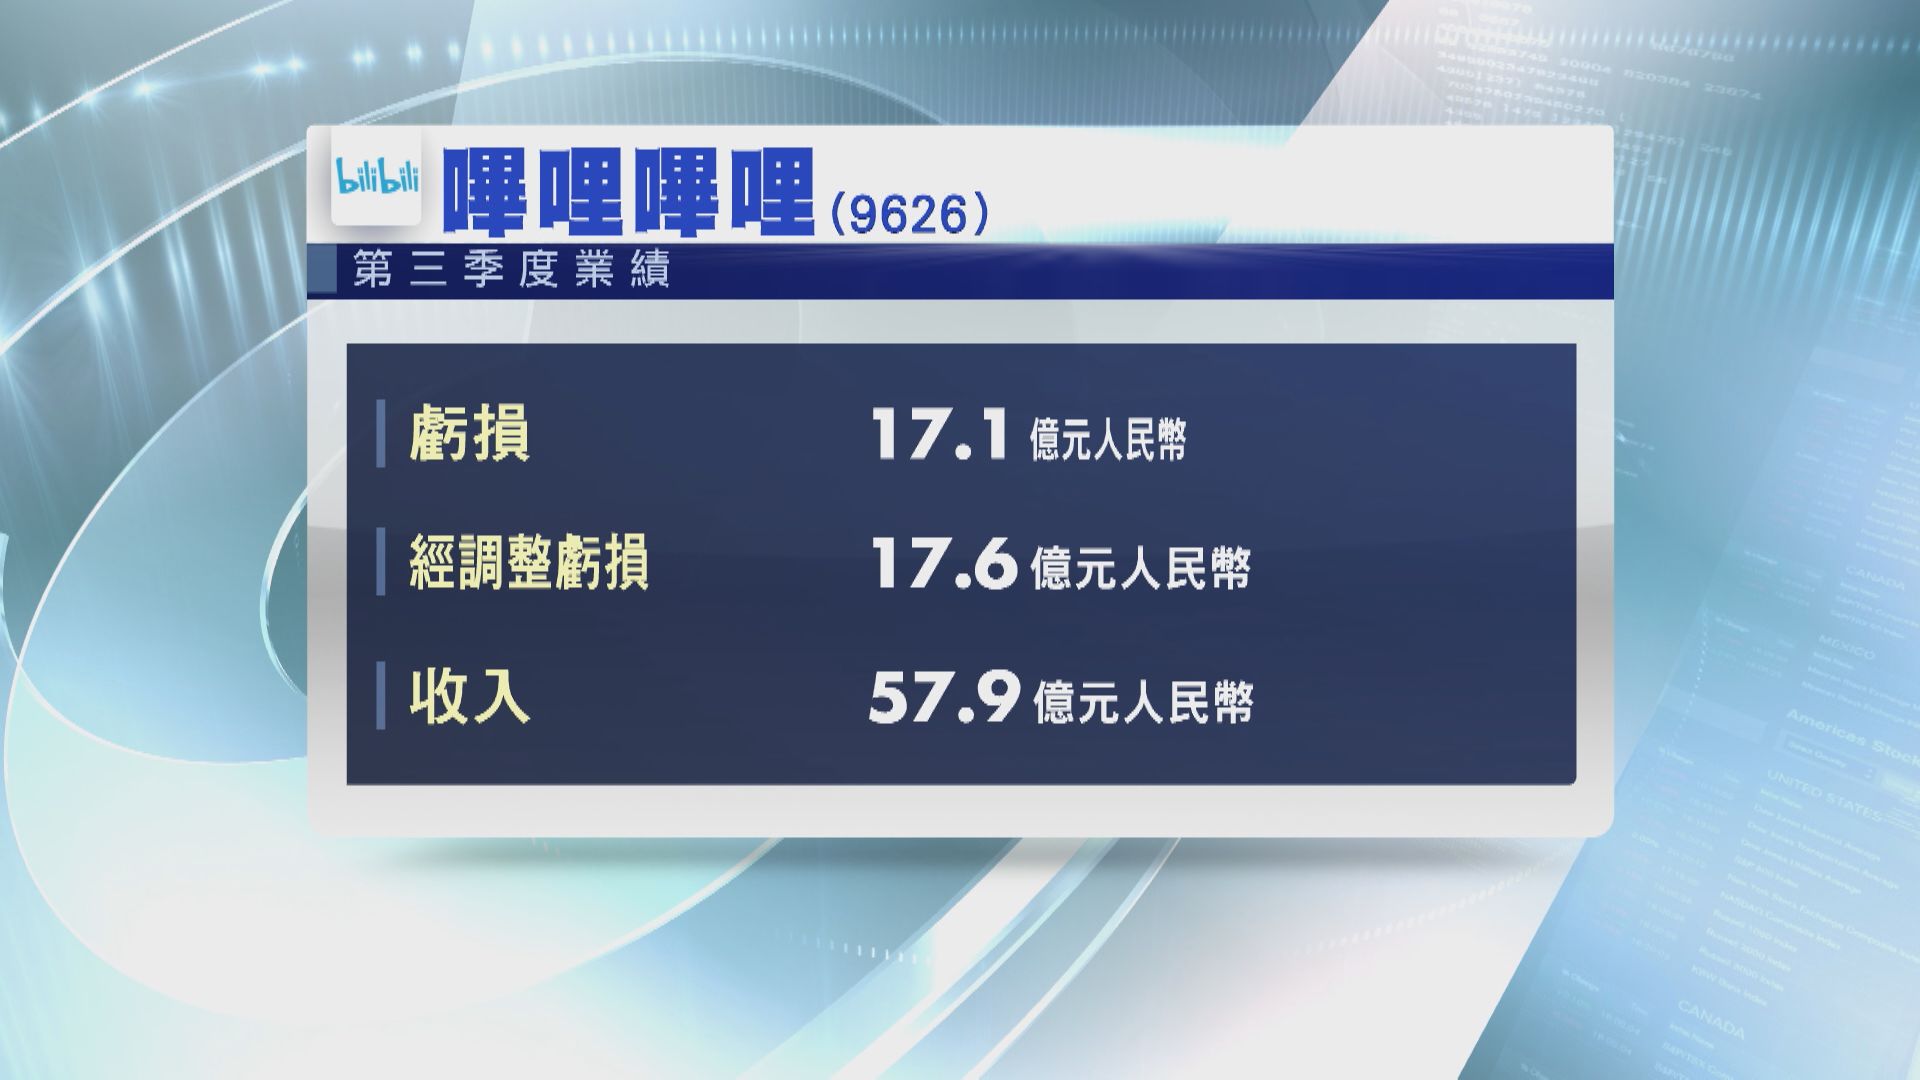 【業績速遞】B站第3季虧損收窄至17億人幣